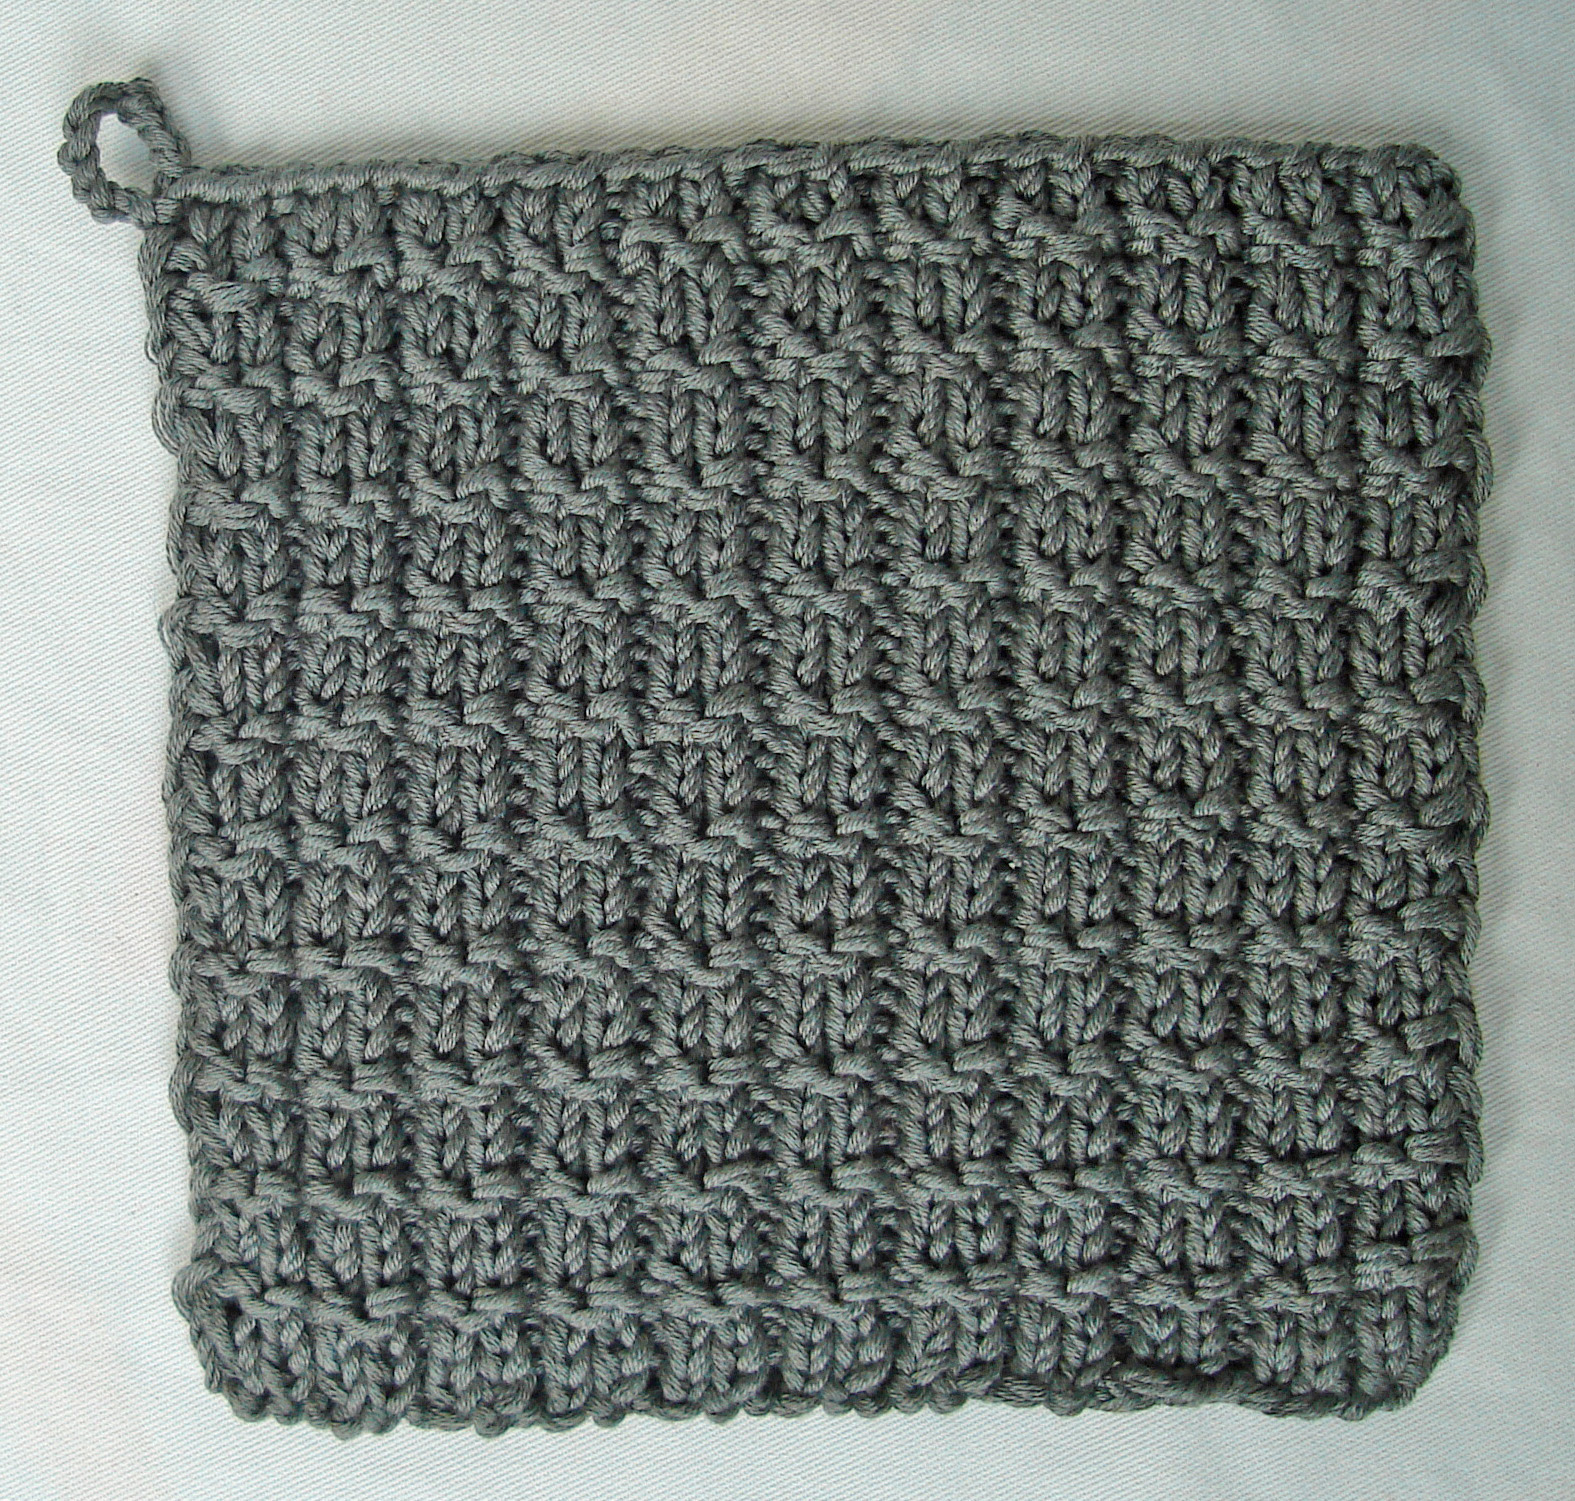 Knit Potholder Patterns Handmadehandsome Handmade Items And Knitting Patterns Handgemaakte